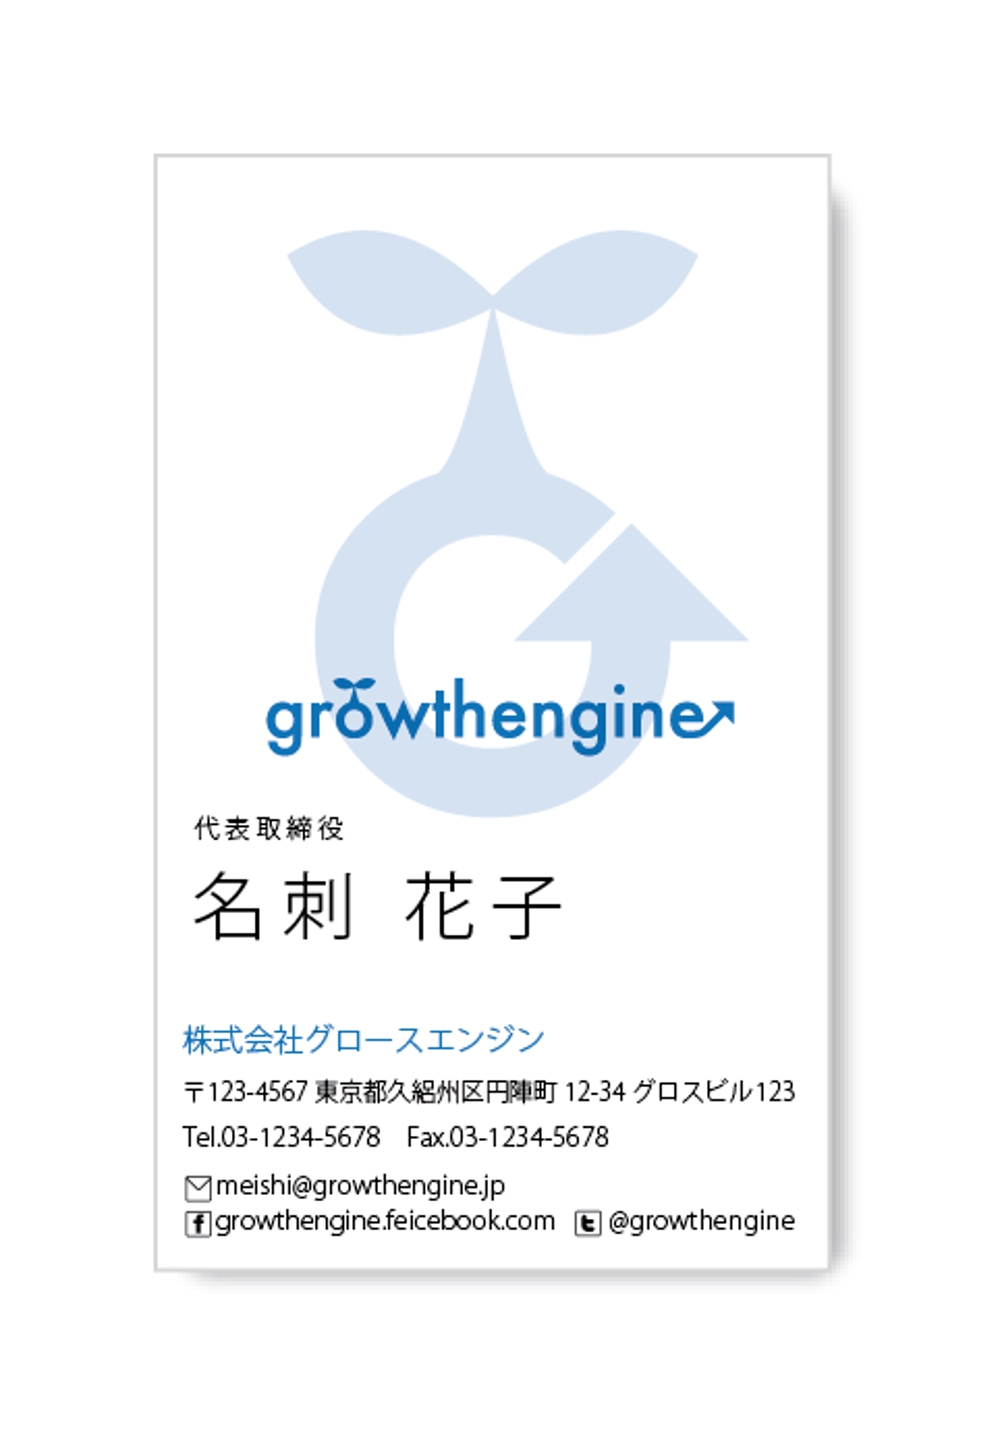 「growthengine」の名刺デザイン